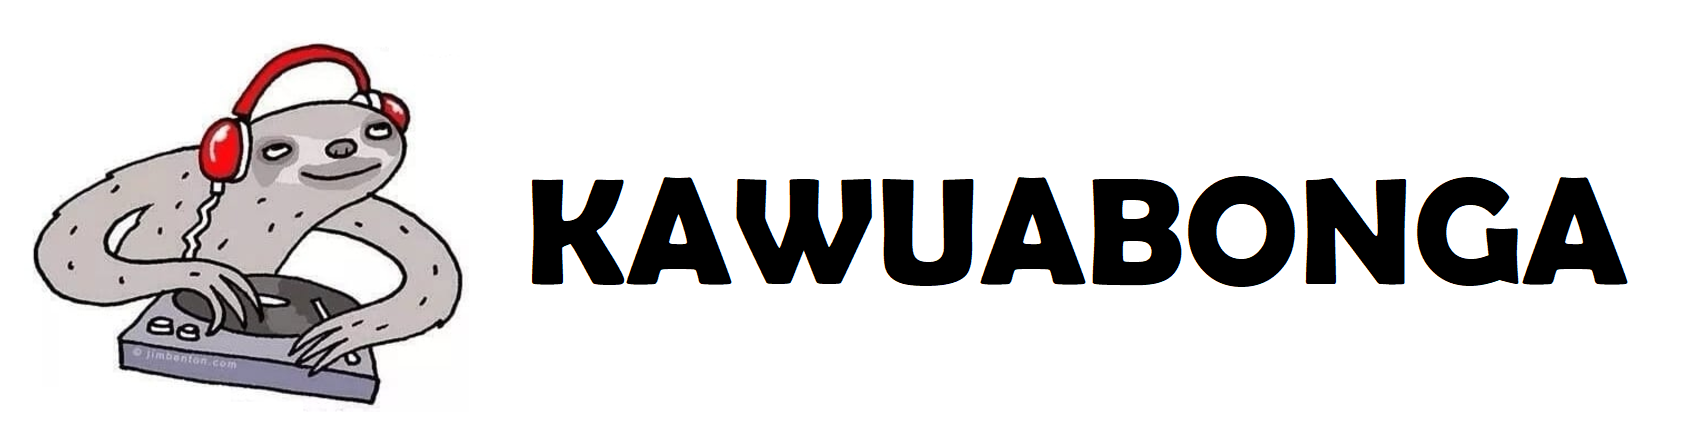 kawuabonga